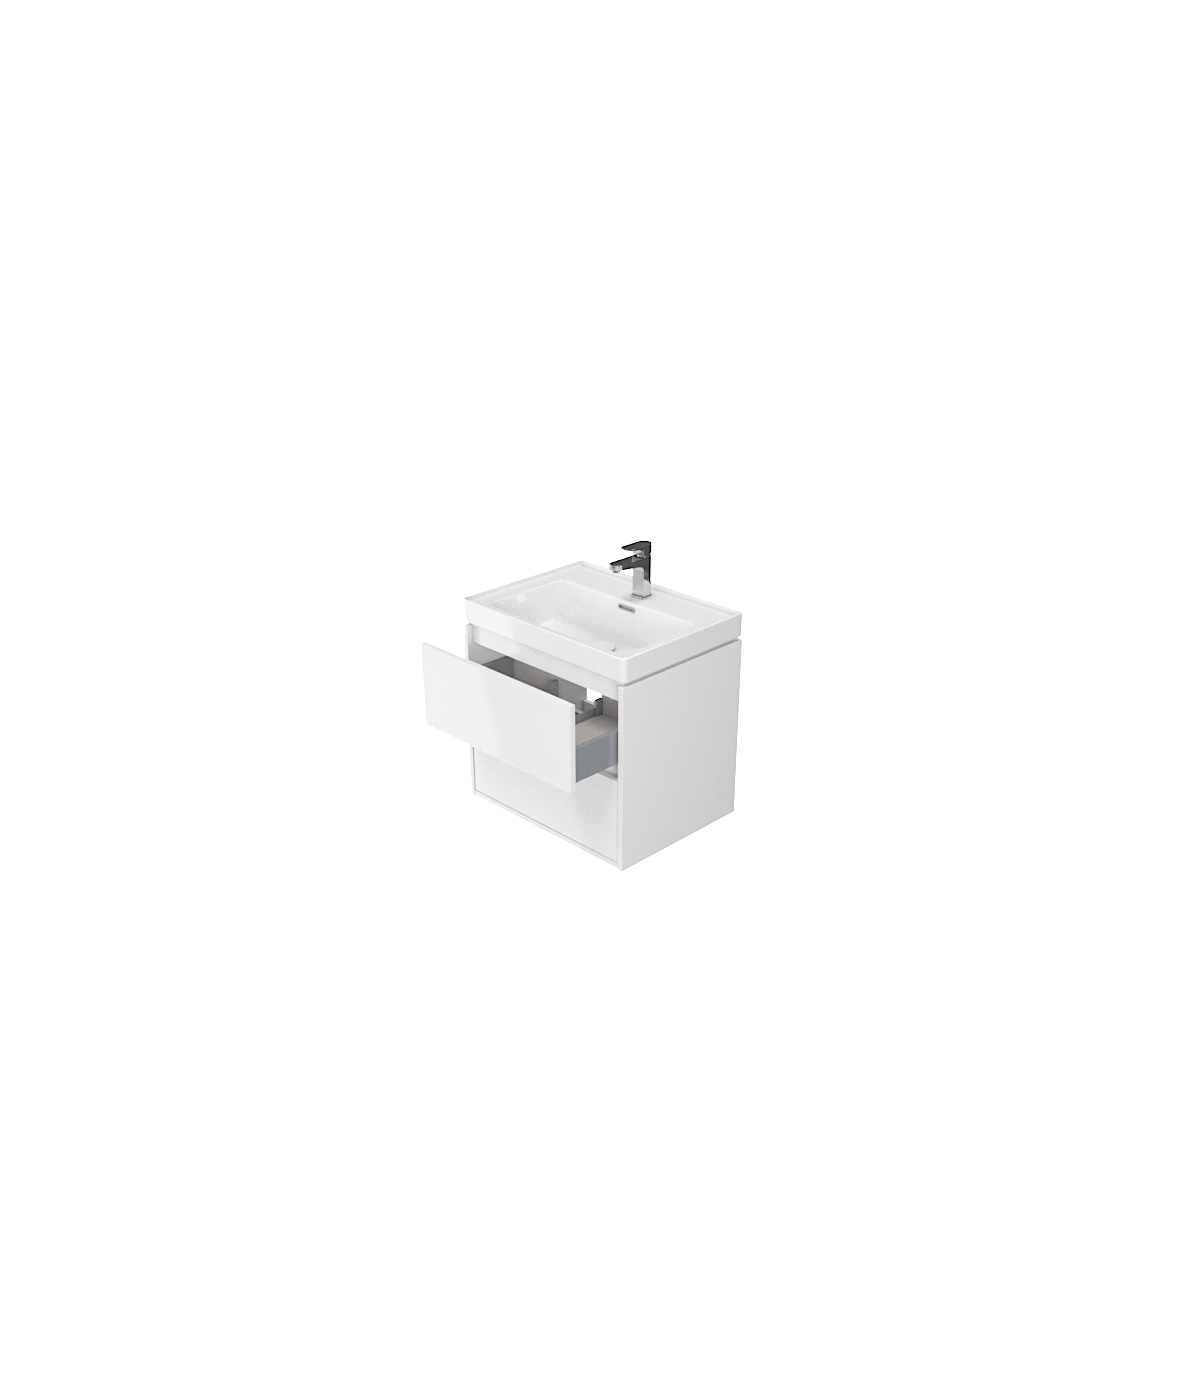 Badmöbel Set CREAZ 60 Waschbecken-Unterschrank mit Badregal 140 Weiß